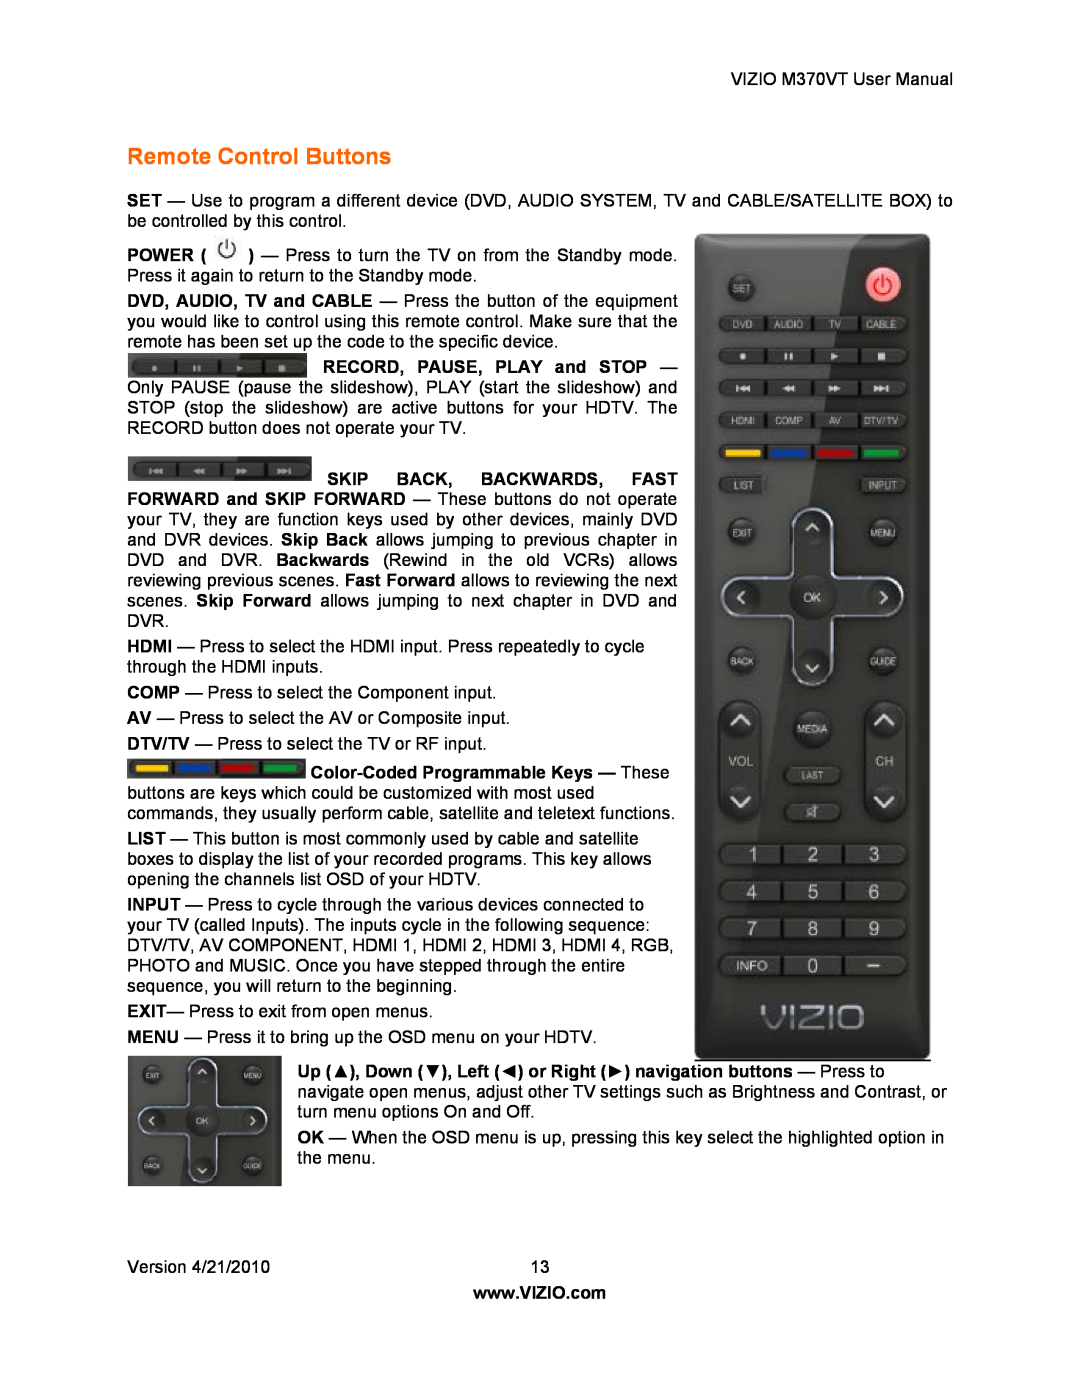 Vizio M370VT manual Remote Control Buttons 